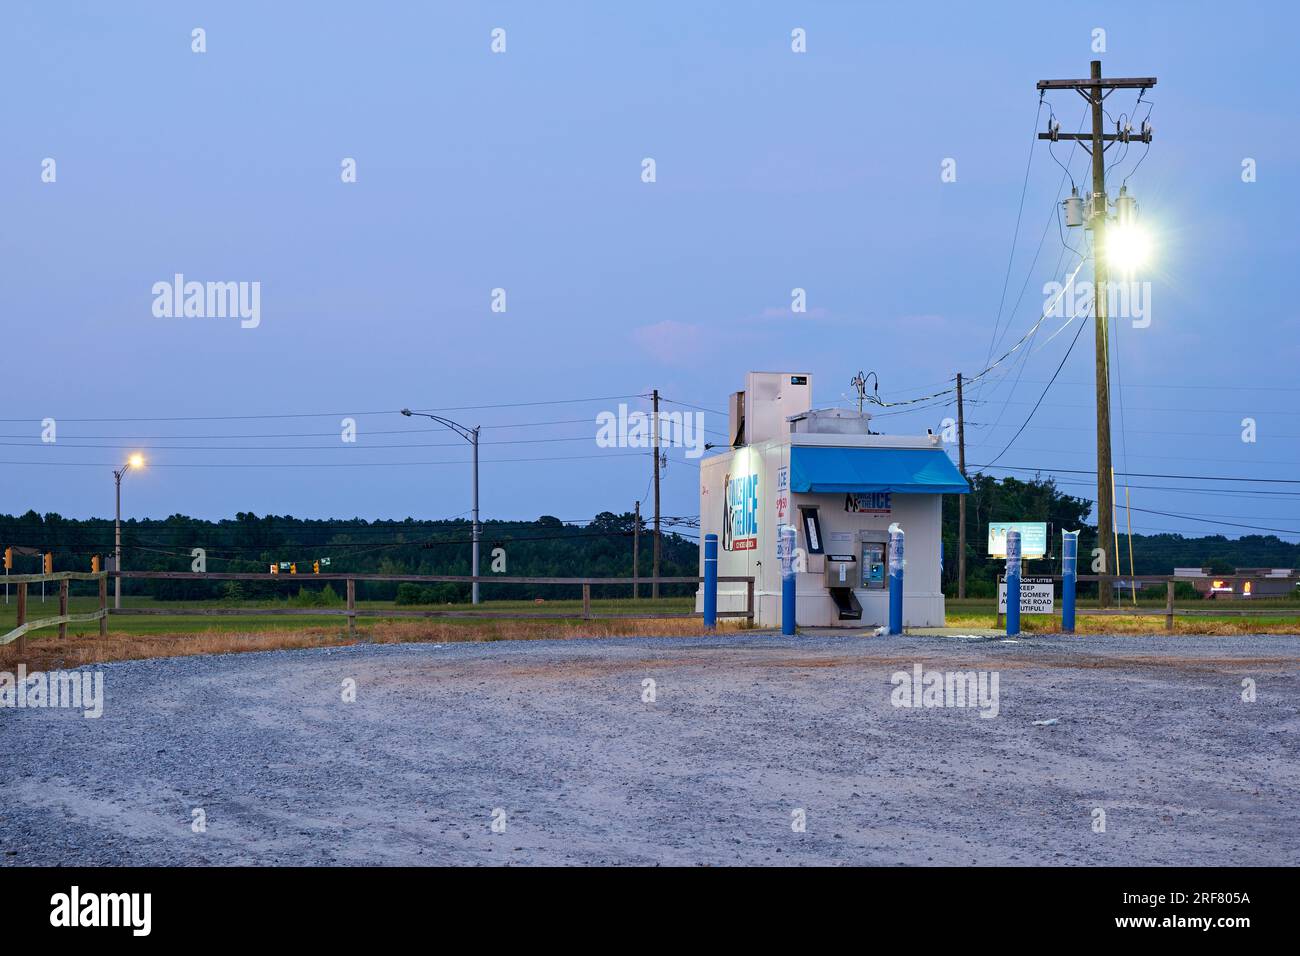 Grande macchina per il ghiaccio indipendente di notte per l'acquisto fai da te di ghiaccio in sacchetti, famosa durante i caldi mesi estivi a Montgomery, Alabama, Stati Uniti. Foto Stock